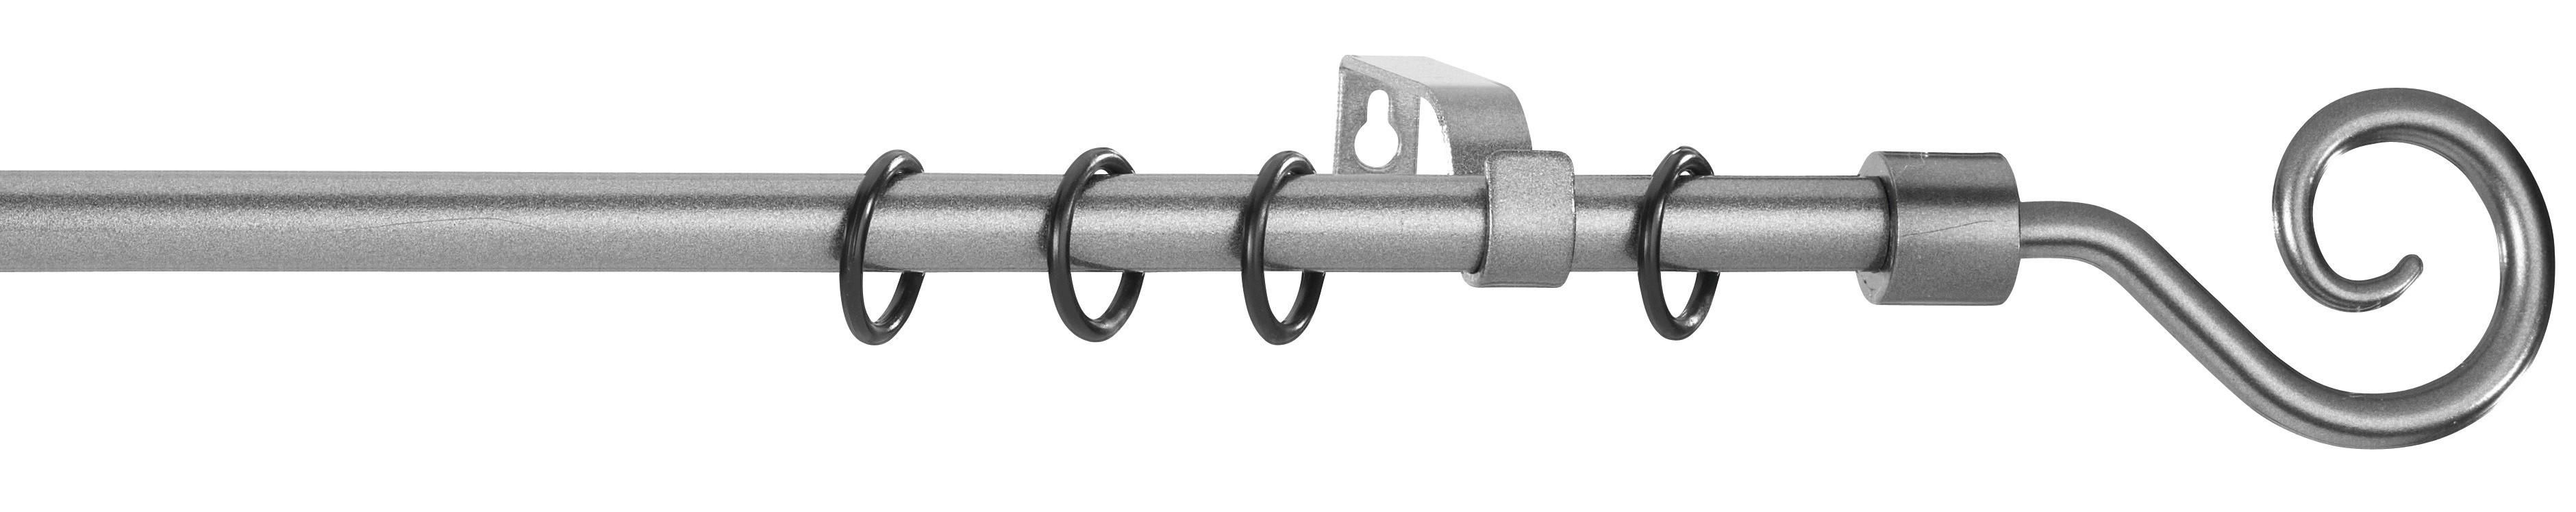 Stilgarnituren Kringel anthrazit Metall D: ca. 1,6 cm ausziehbar von ca. 130 bis 240 cm 1.0 Läufe